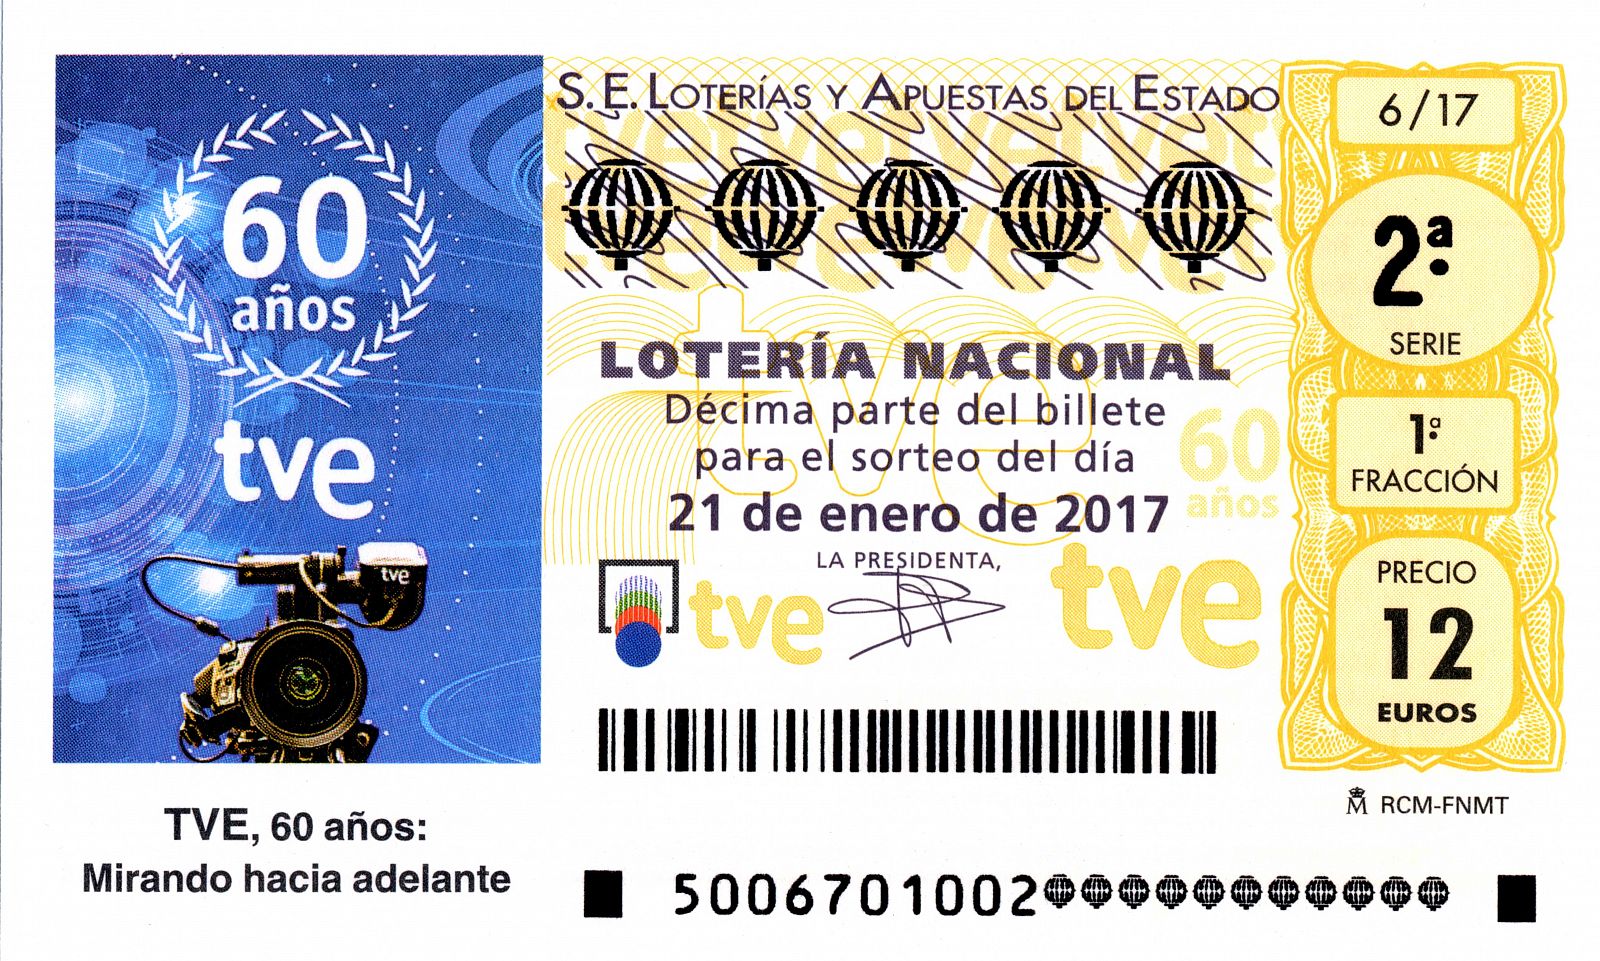 La Lotería Nacional homenajea el 60º aniversario de TVE